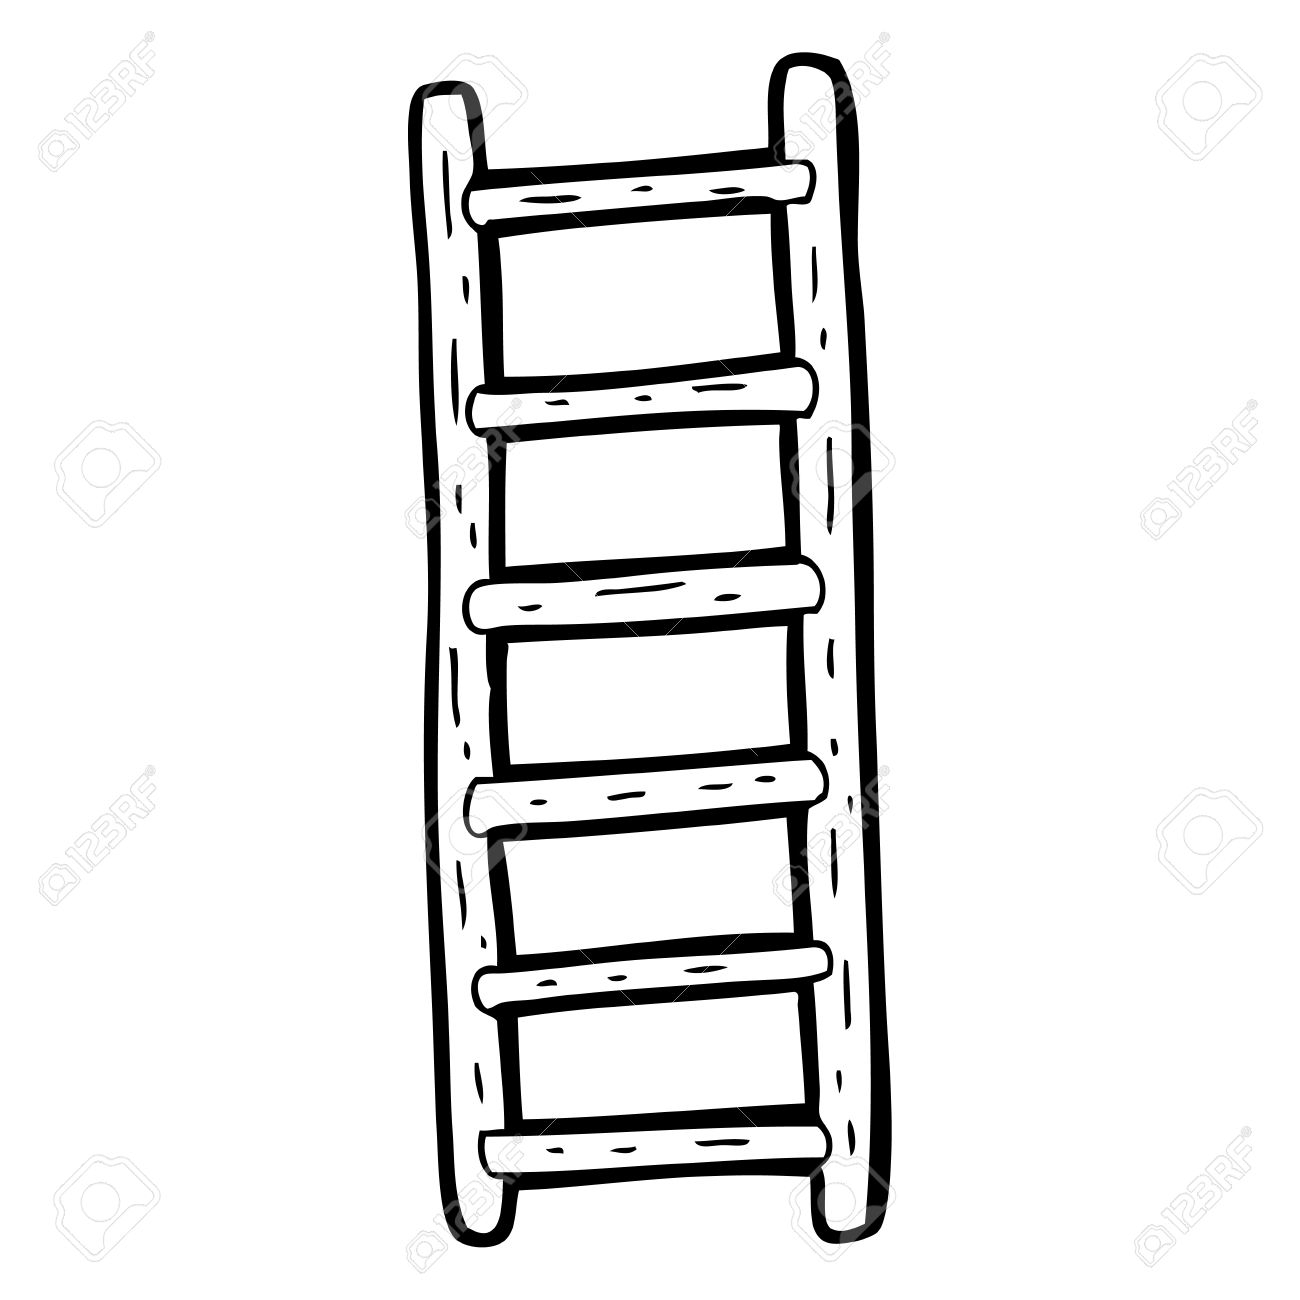 Ladder clipart, Ladder Transparent FREE for download on.